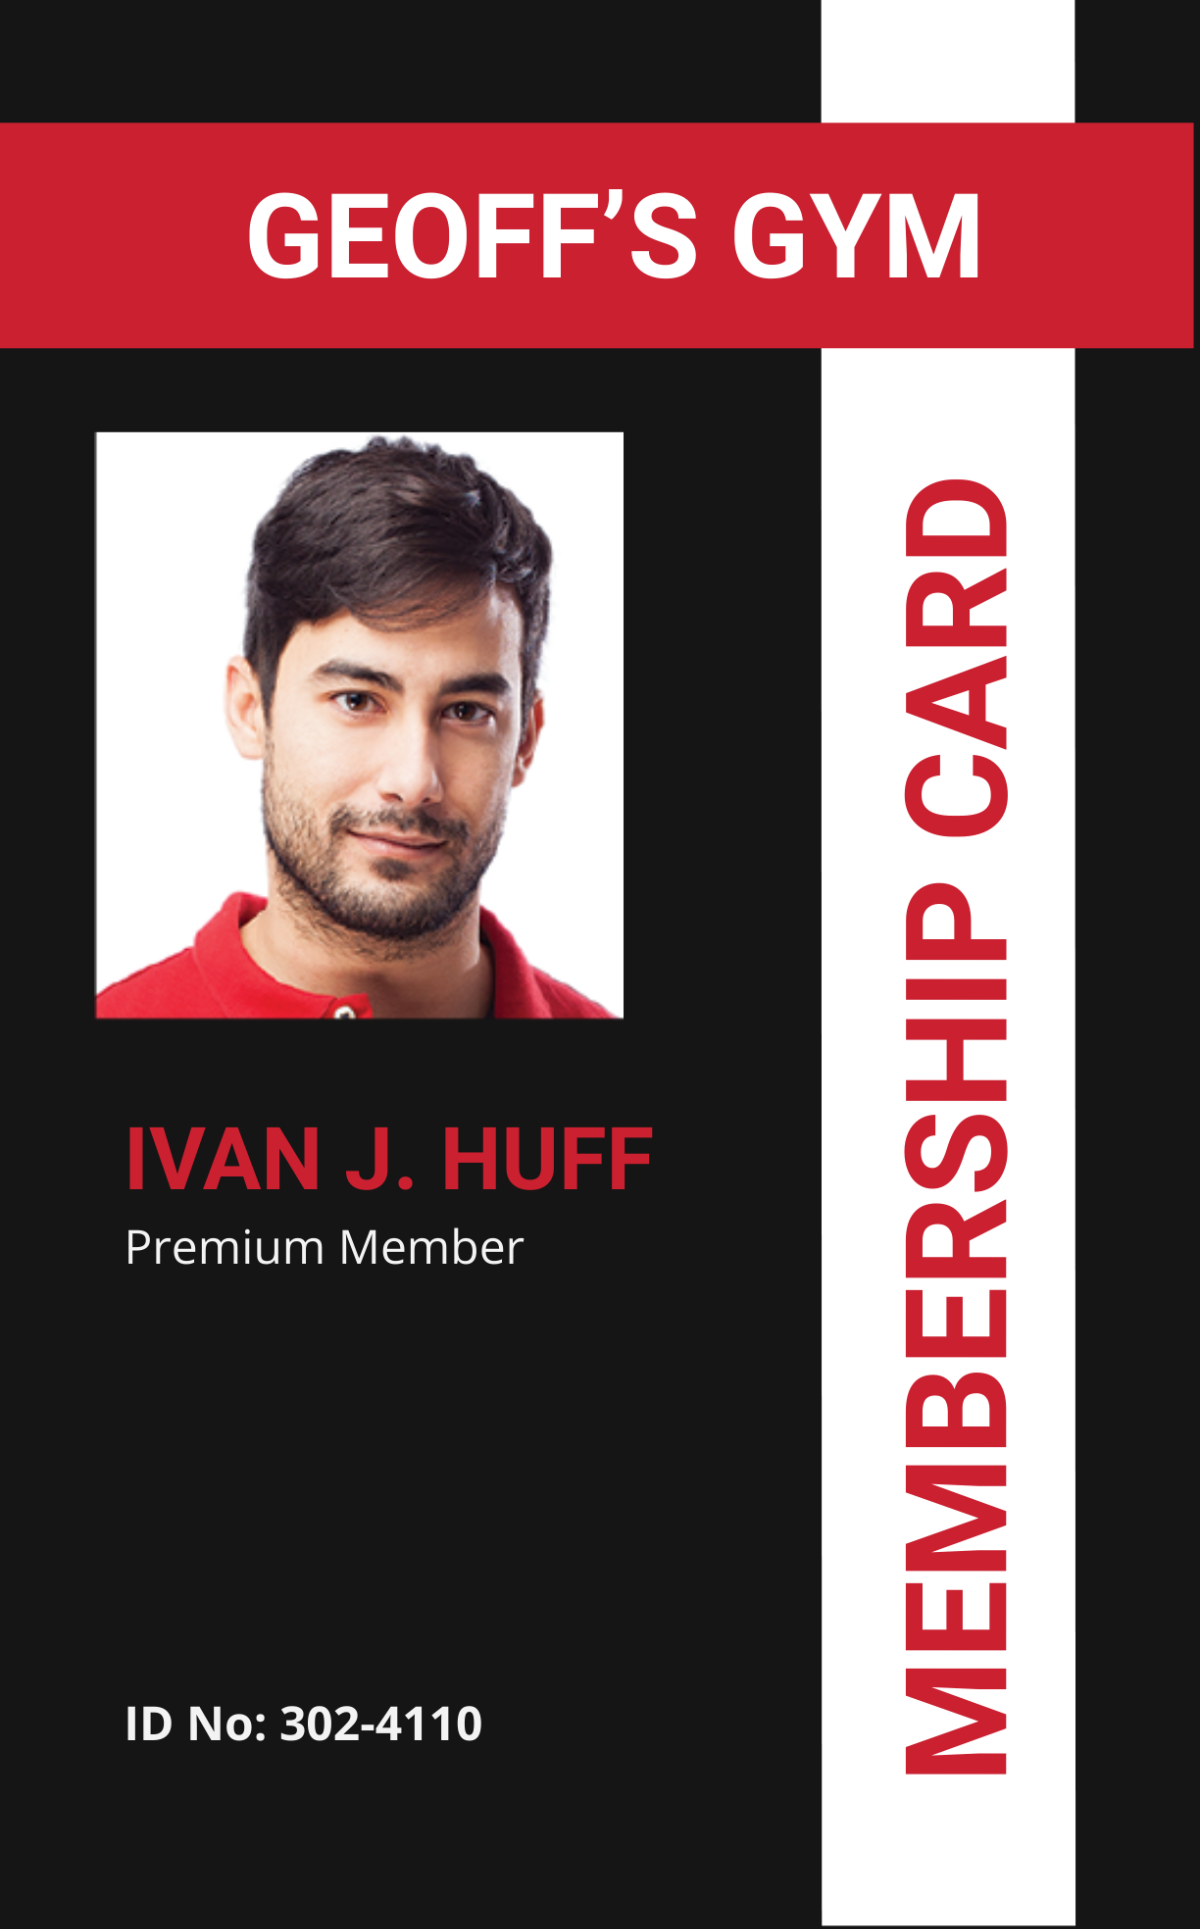 Membership ID card